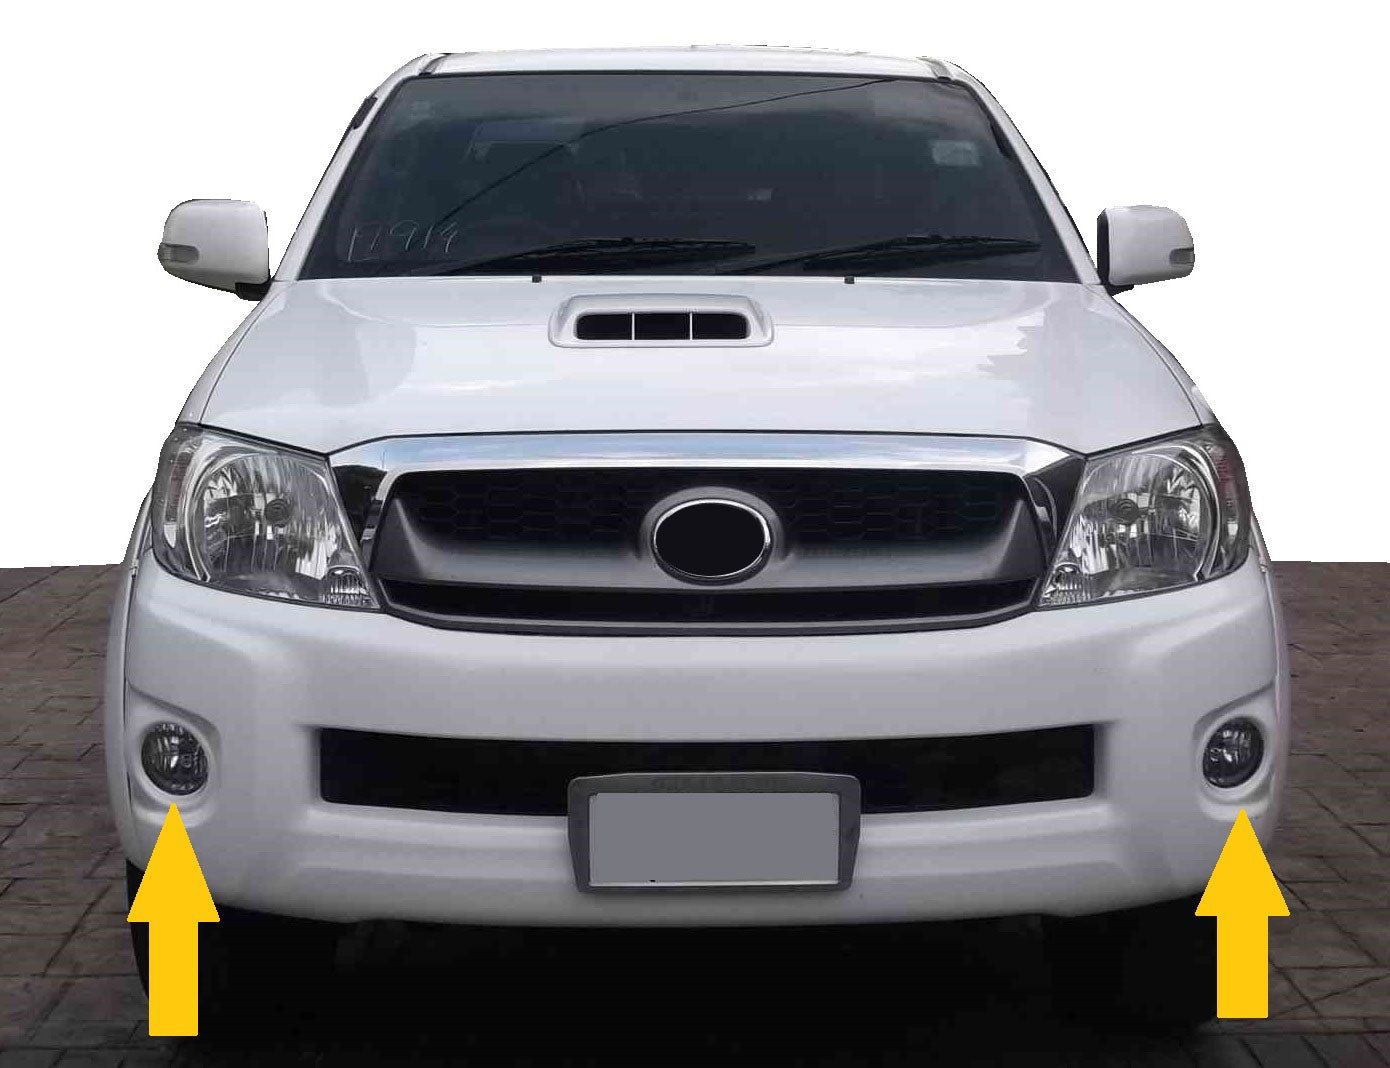 Front Fog Light Kit for Toyota Hilux Mk6 Pickup 2009-11